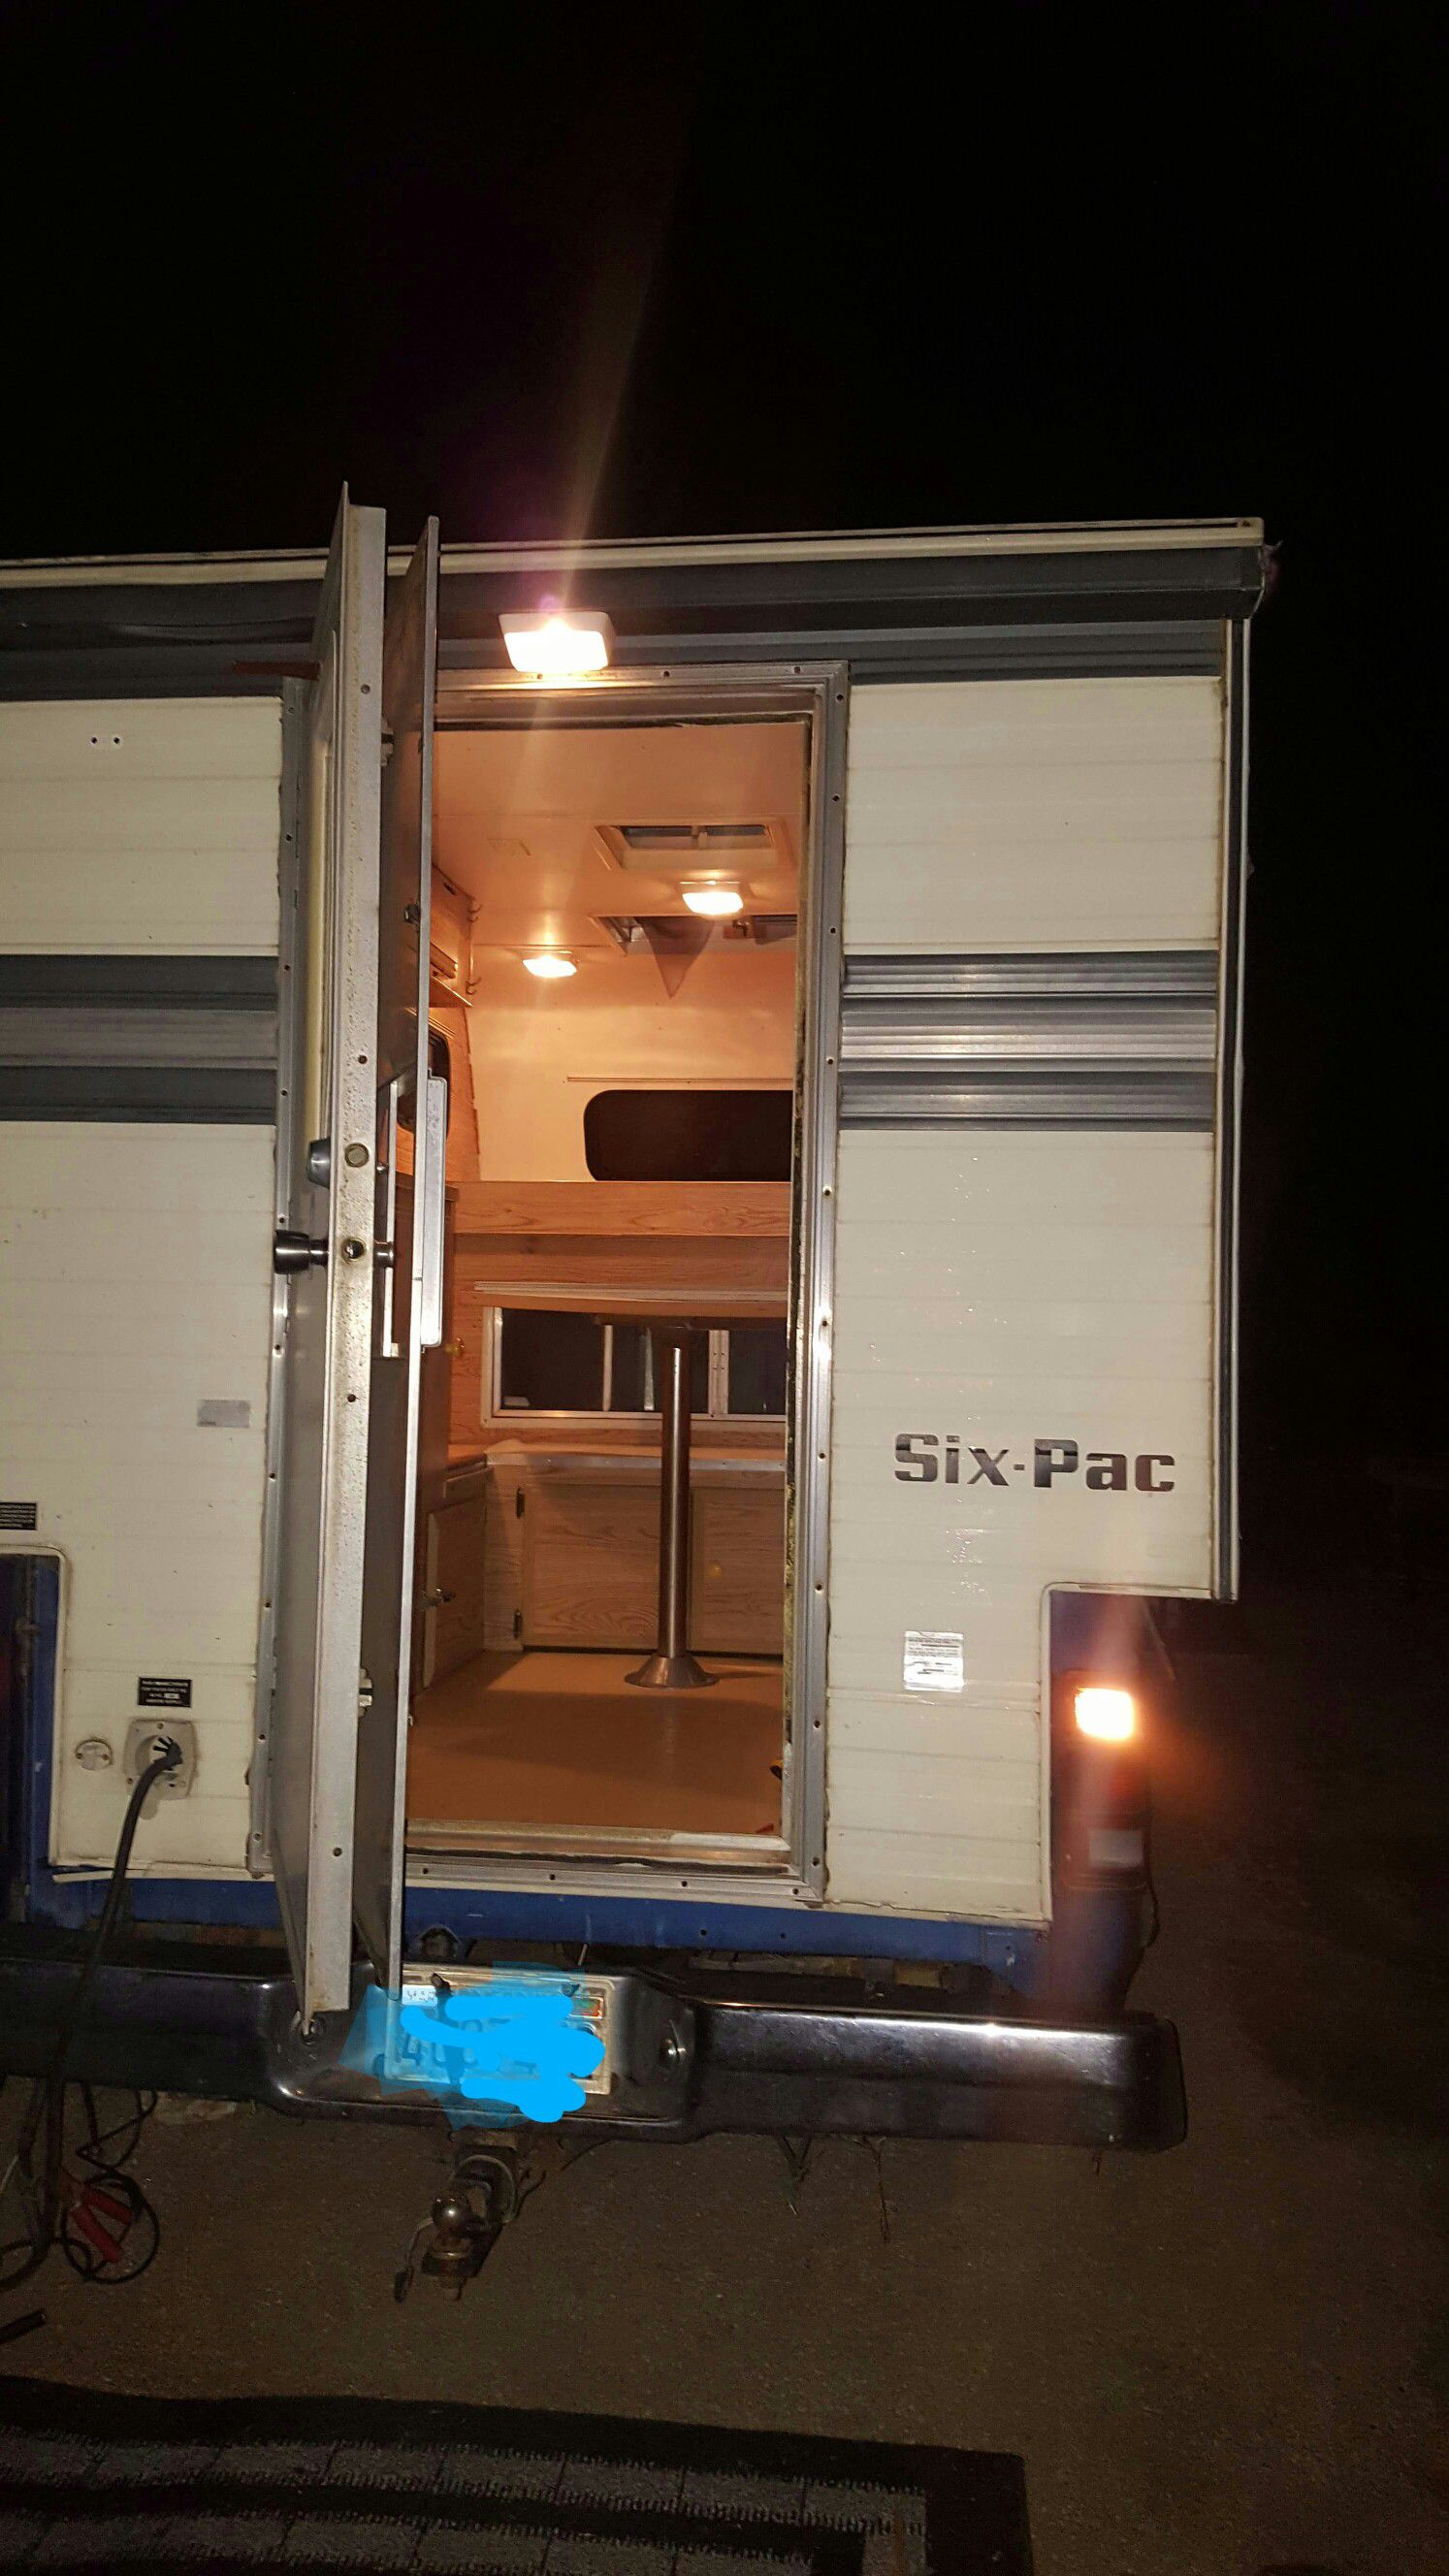 Six pac truck camper